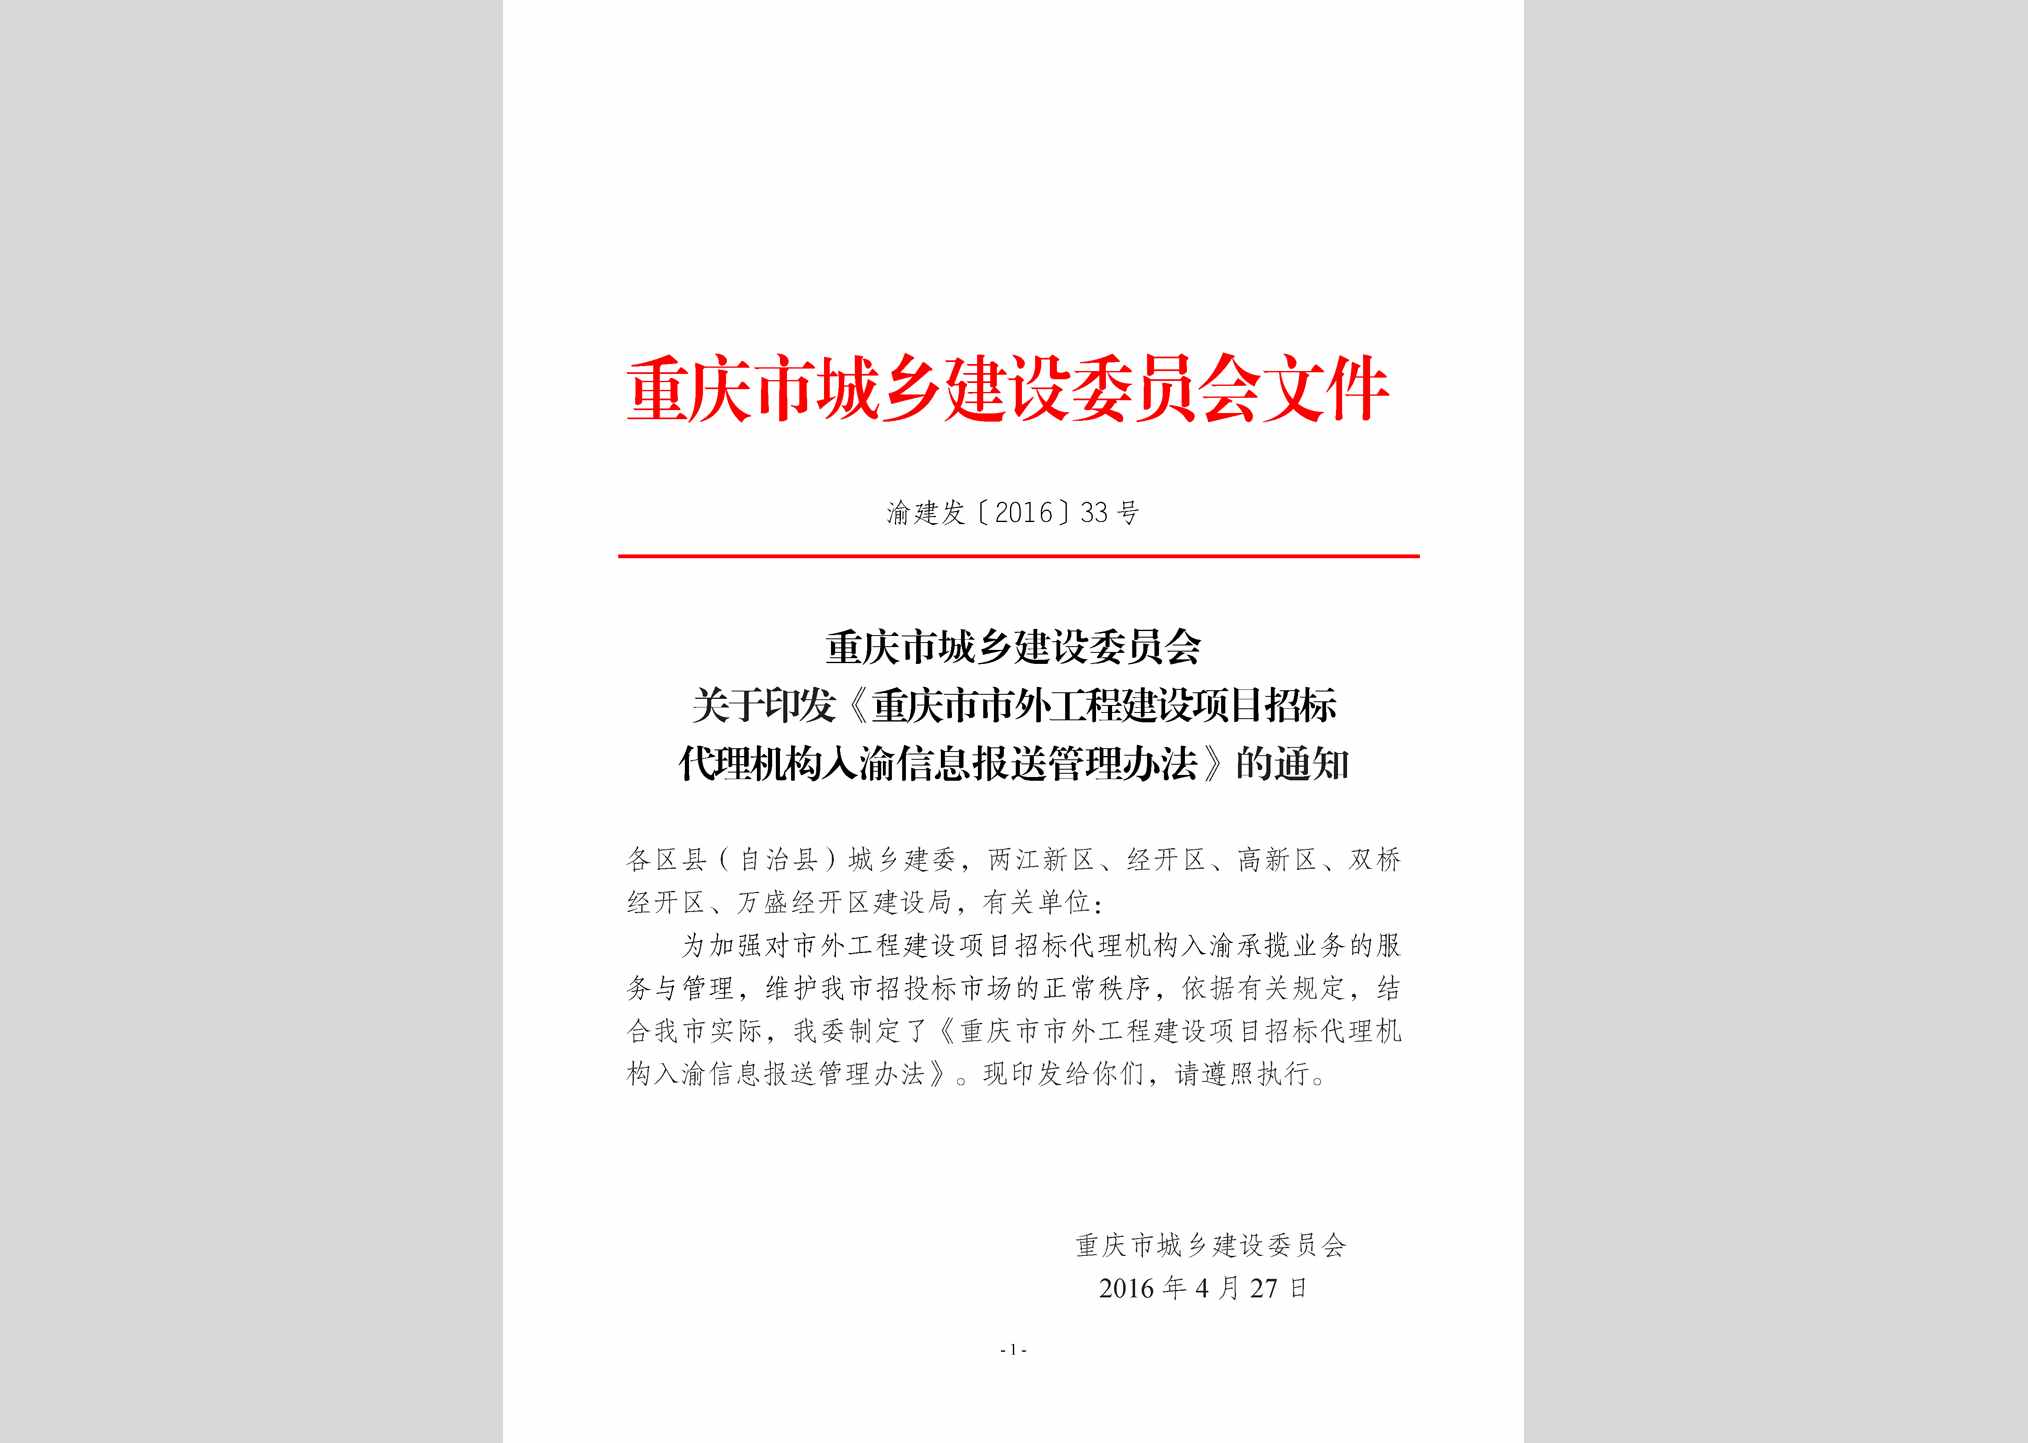 渝建发[2016]33号：重庆市市外工程建设项目招标代理机构入渝信息报送管理办法